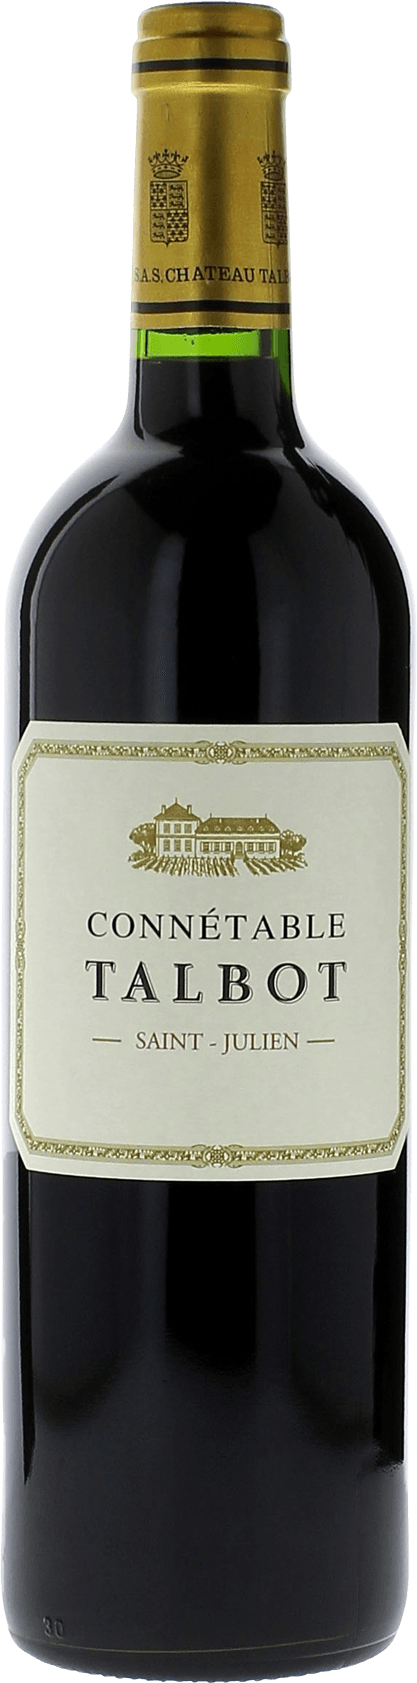 Connetable talbot 2015 2me vin de TALBOT Saint-Julien, Bordeaux rouge